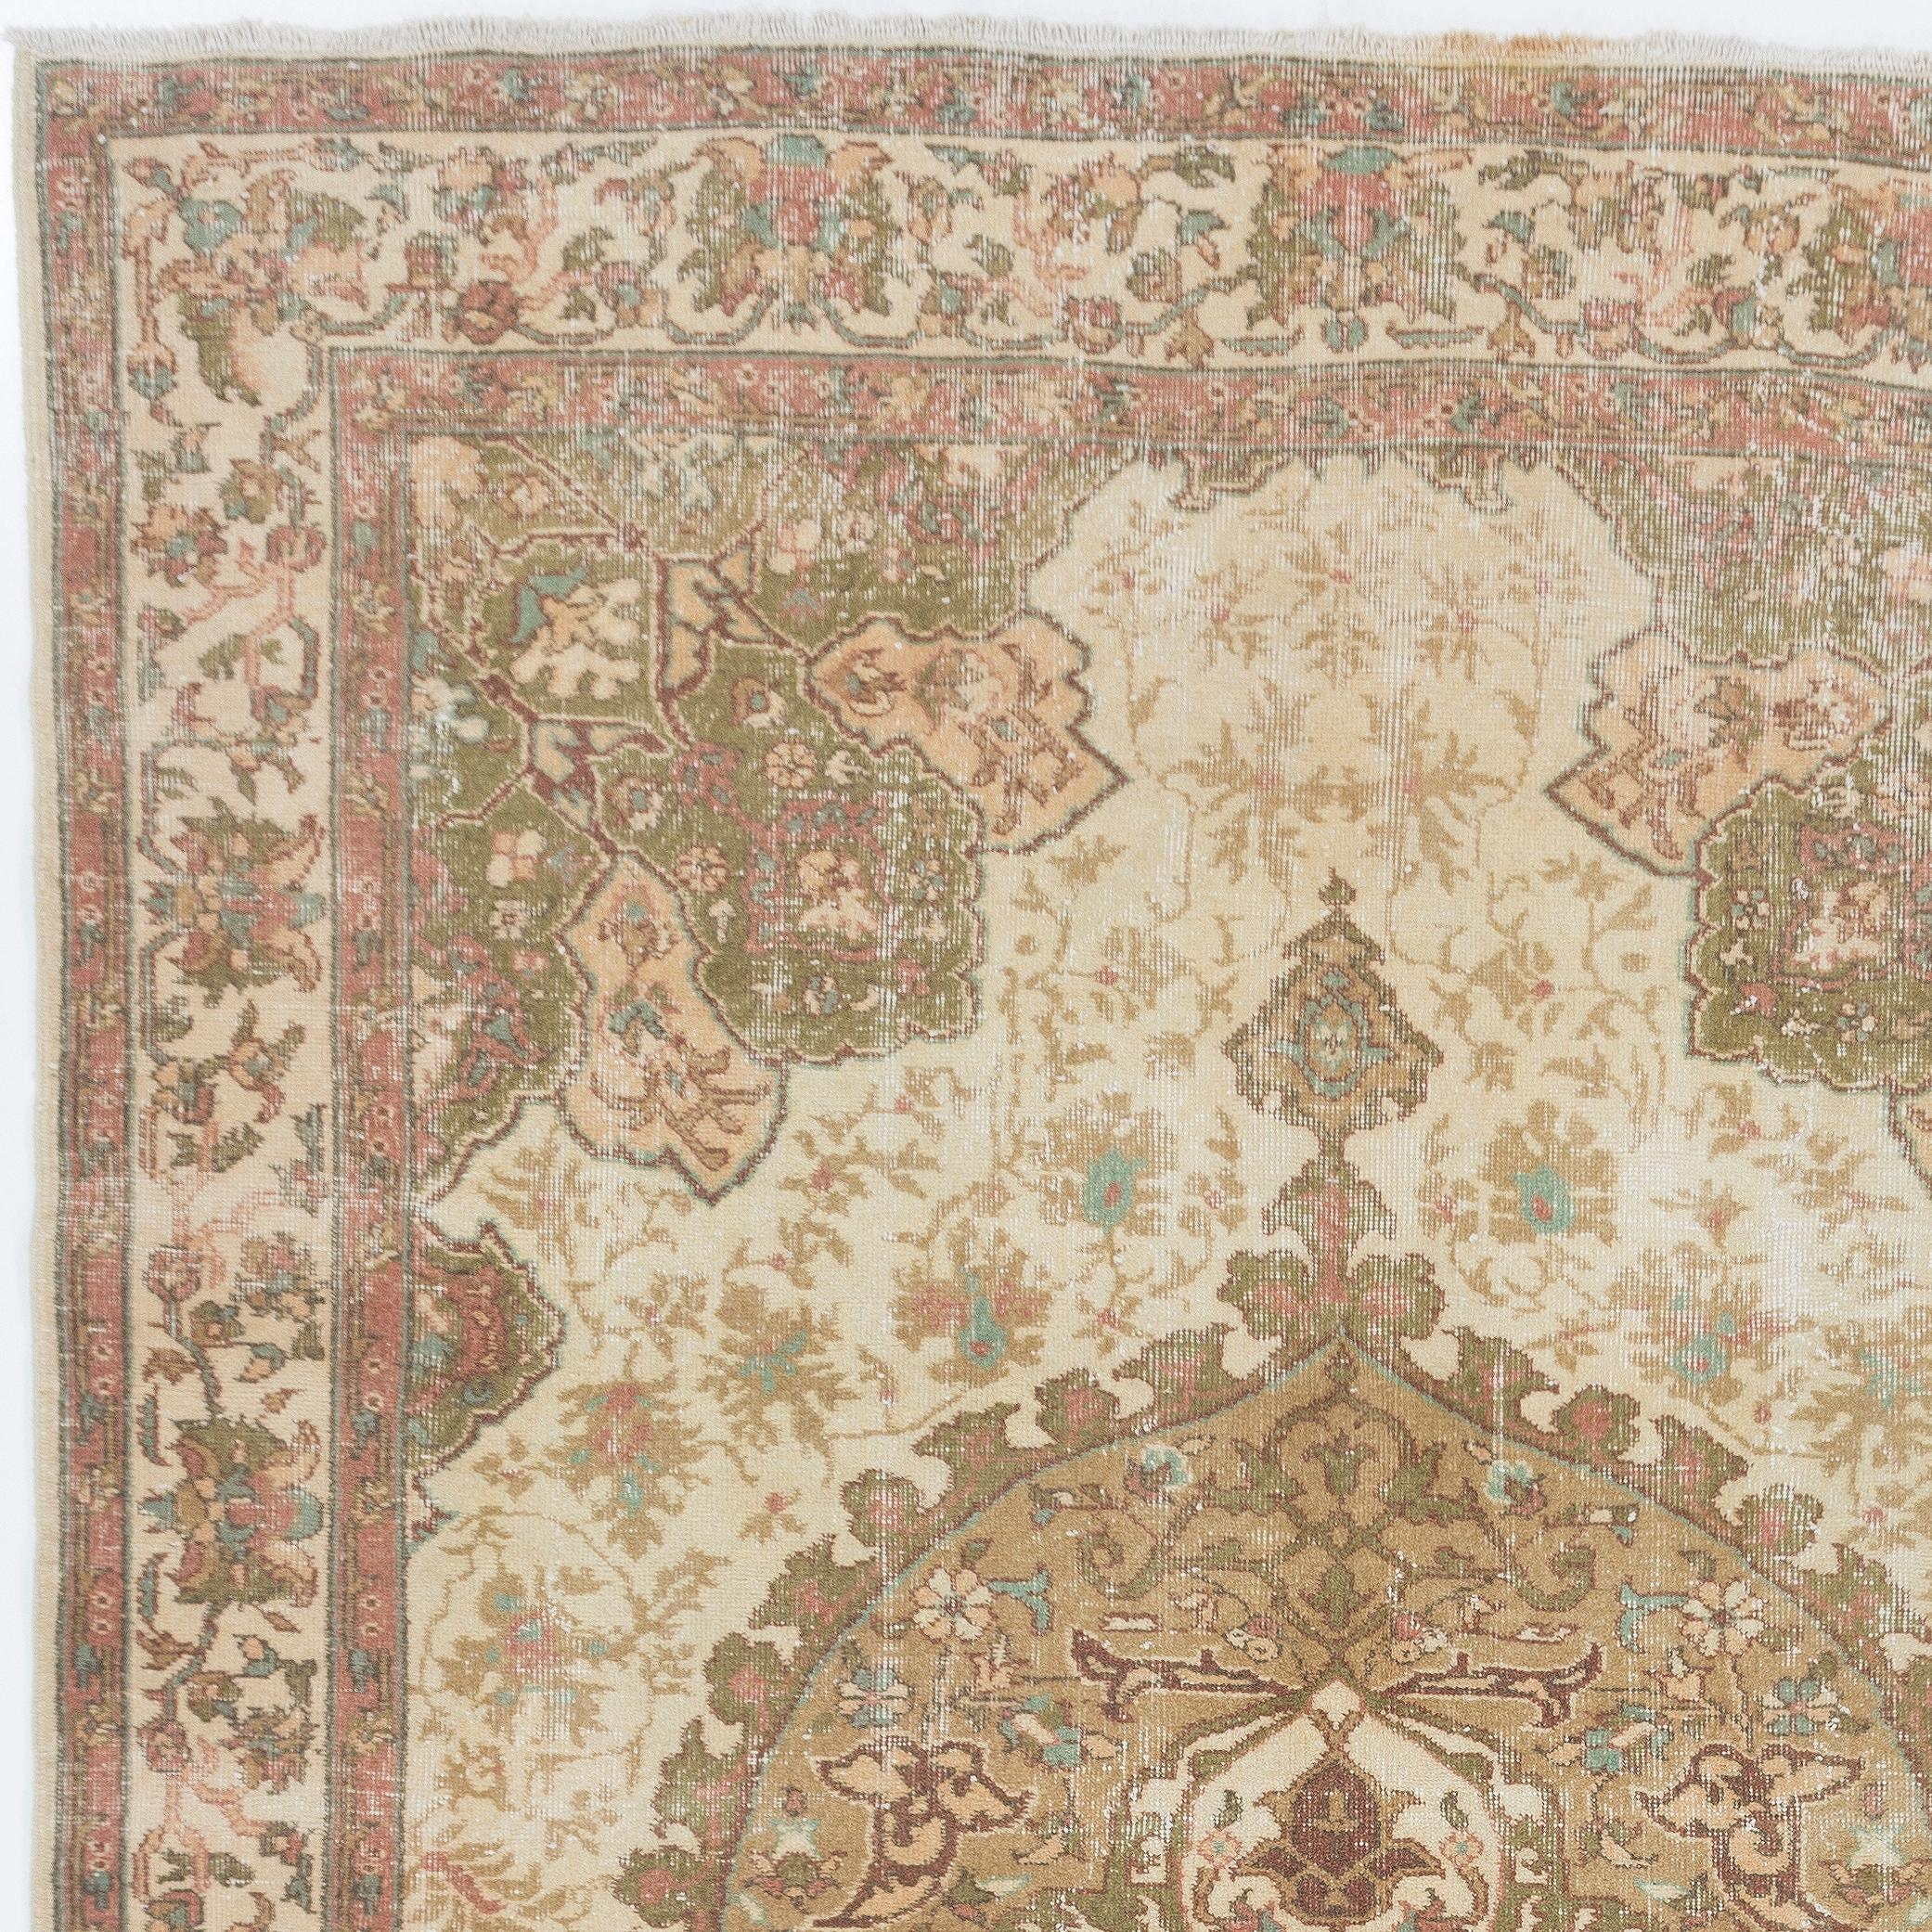 Ein fein handgeknüpfter türkischer Teppich aus den 1960er Jahren mit einem eleganten Medaillonmuster.
Der Teppich hat einen gleichmäßigen, niedrigen Wollflor auf Baumwollbasis. Es ist schwer und liegt flach auf dem Boden, in sehr gutem Zustand ohne